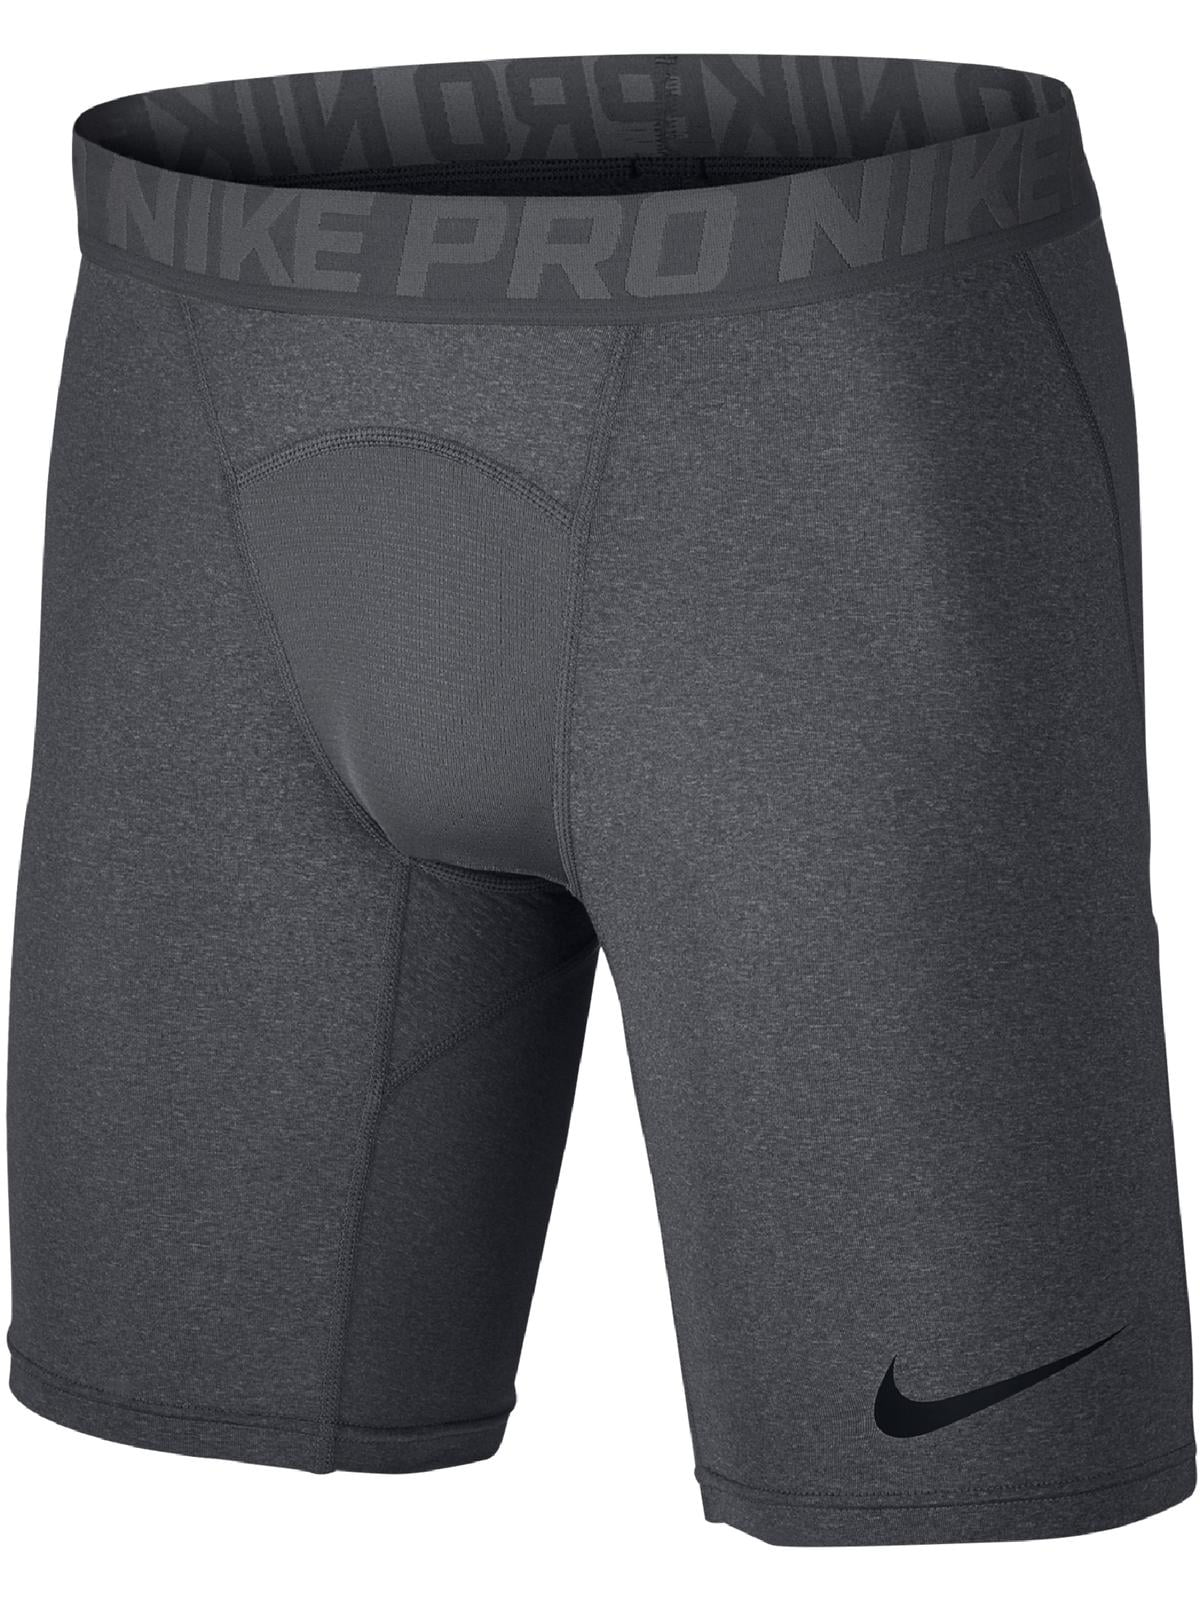 Nike Mens Underwear Comfy Long Boxer Brief - Walmart.com